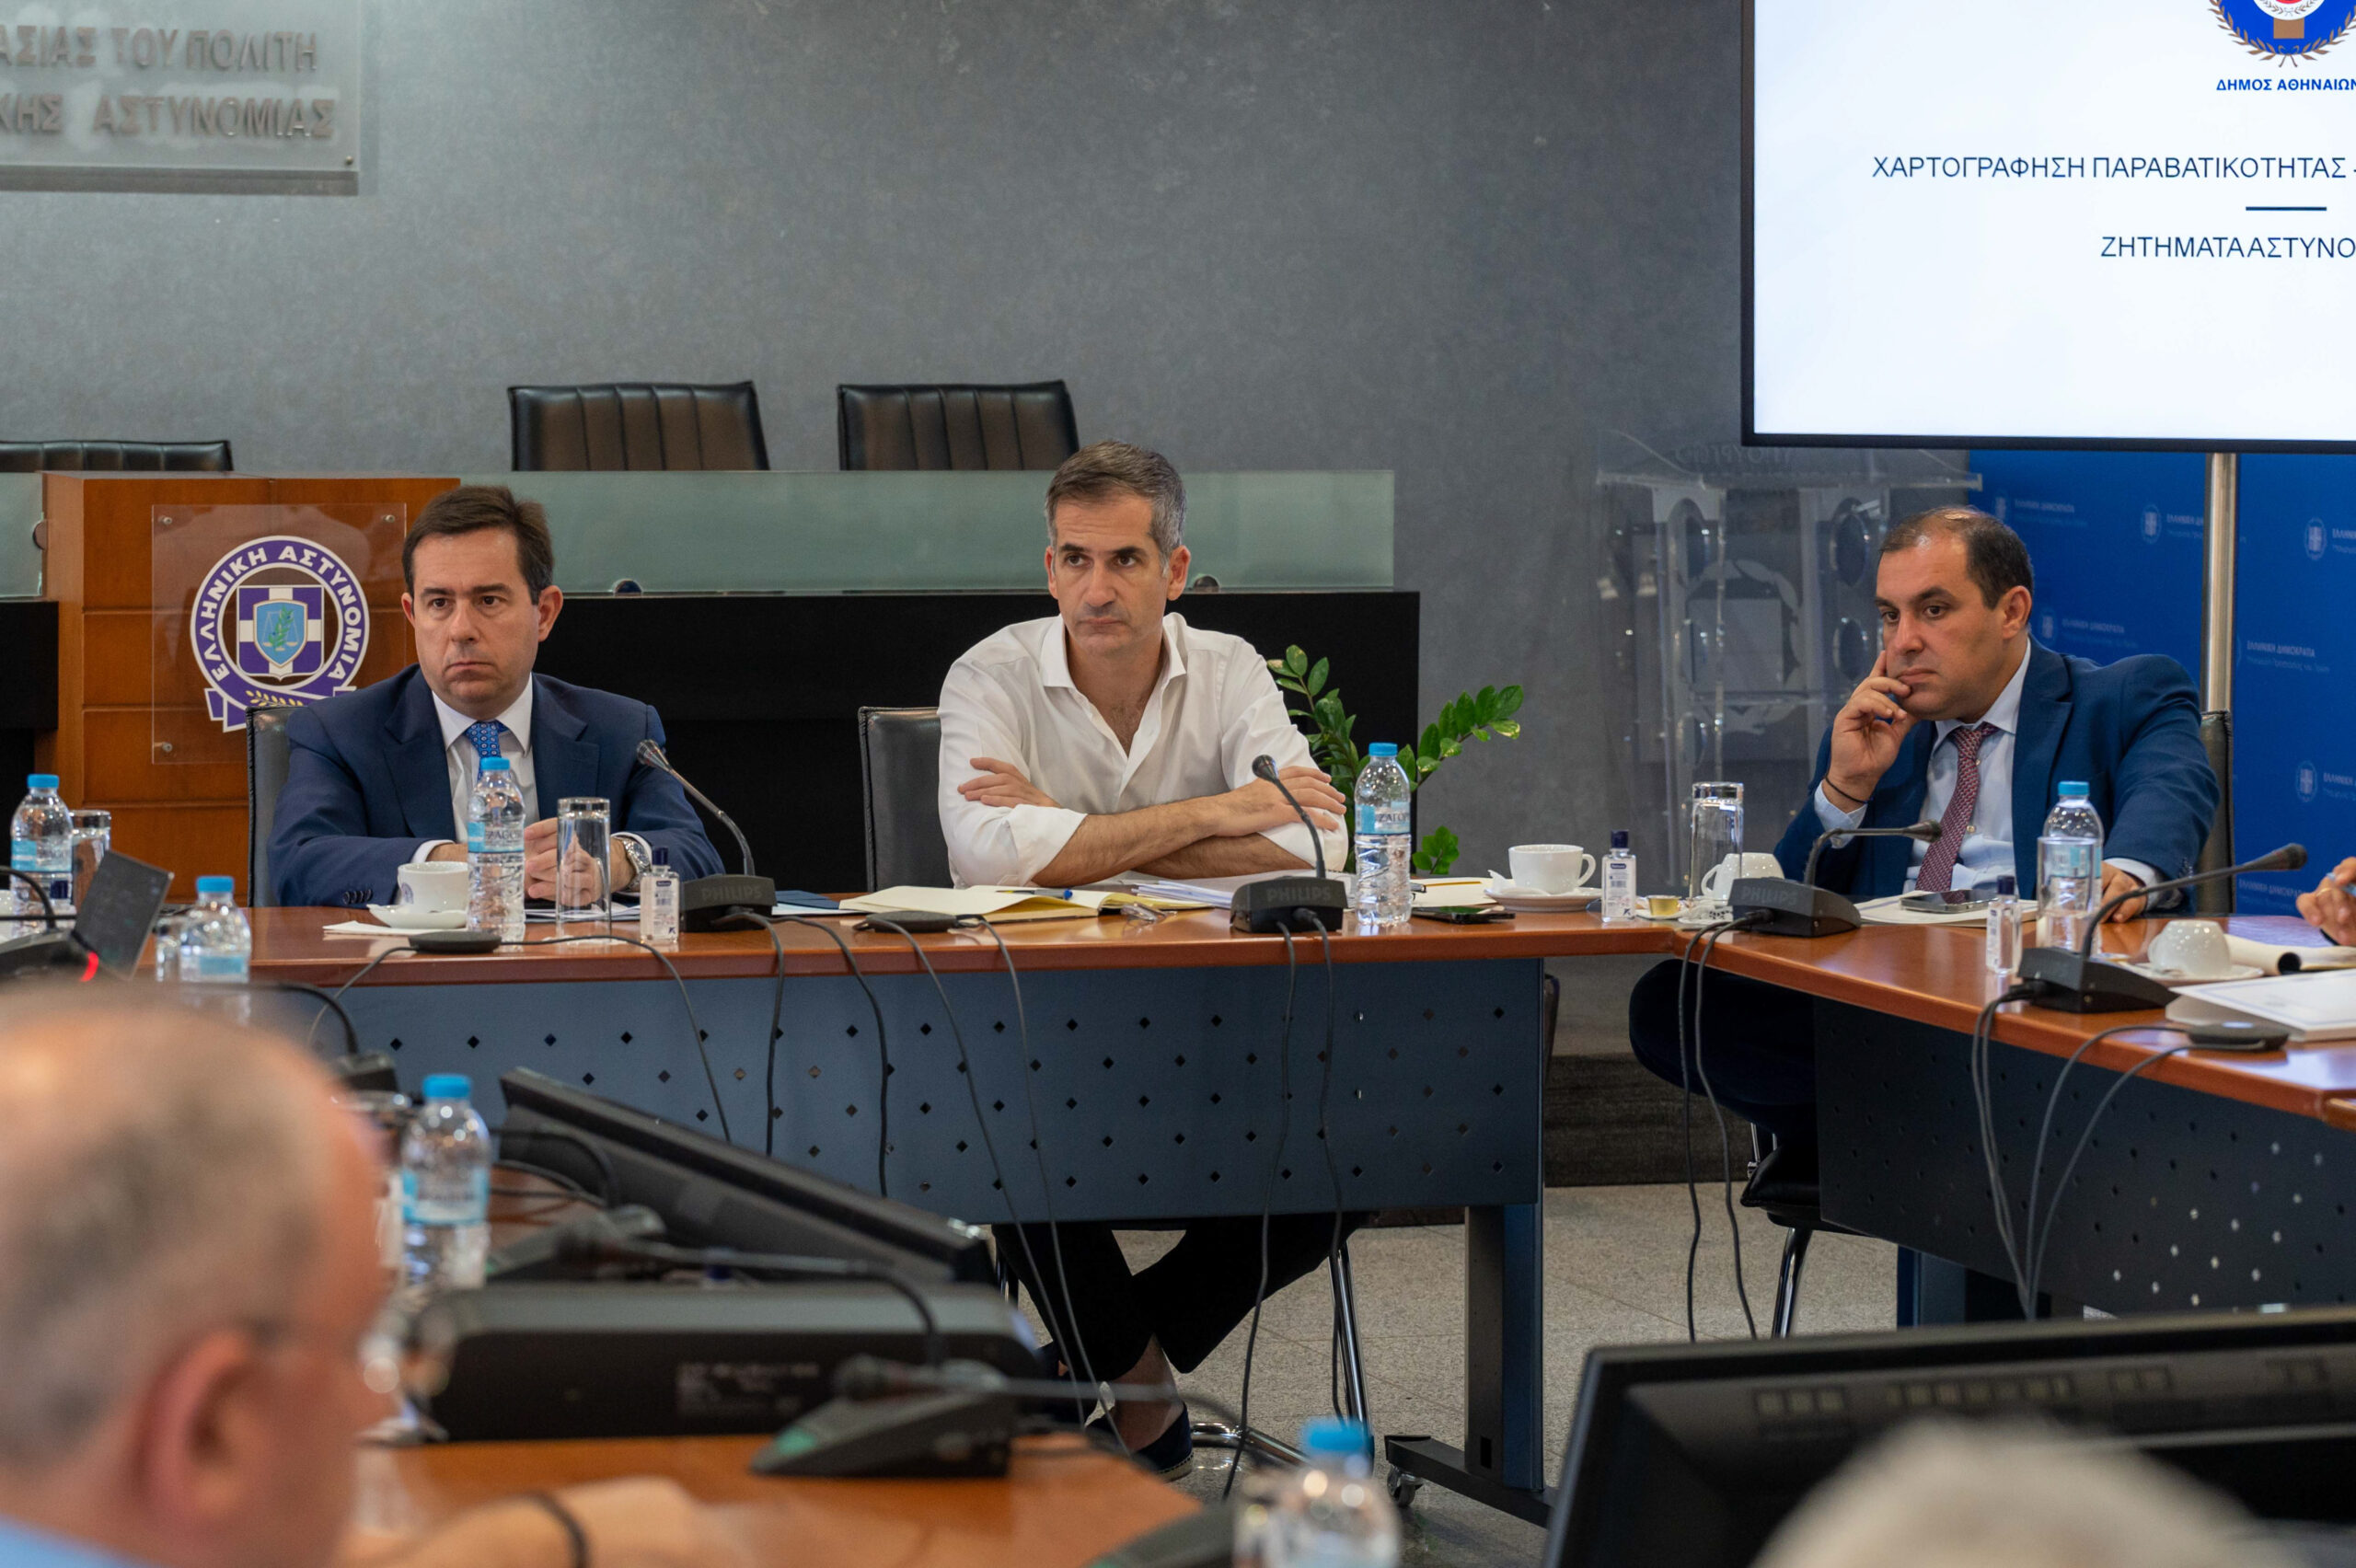 Ν. Μηταράκης σε Κ. Μπακογιάννη: Δίνουμε έμφαση στην πρόληψη και αντιμετώπιση της παραβατικότητας στην Αθήνα